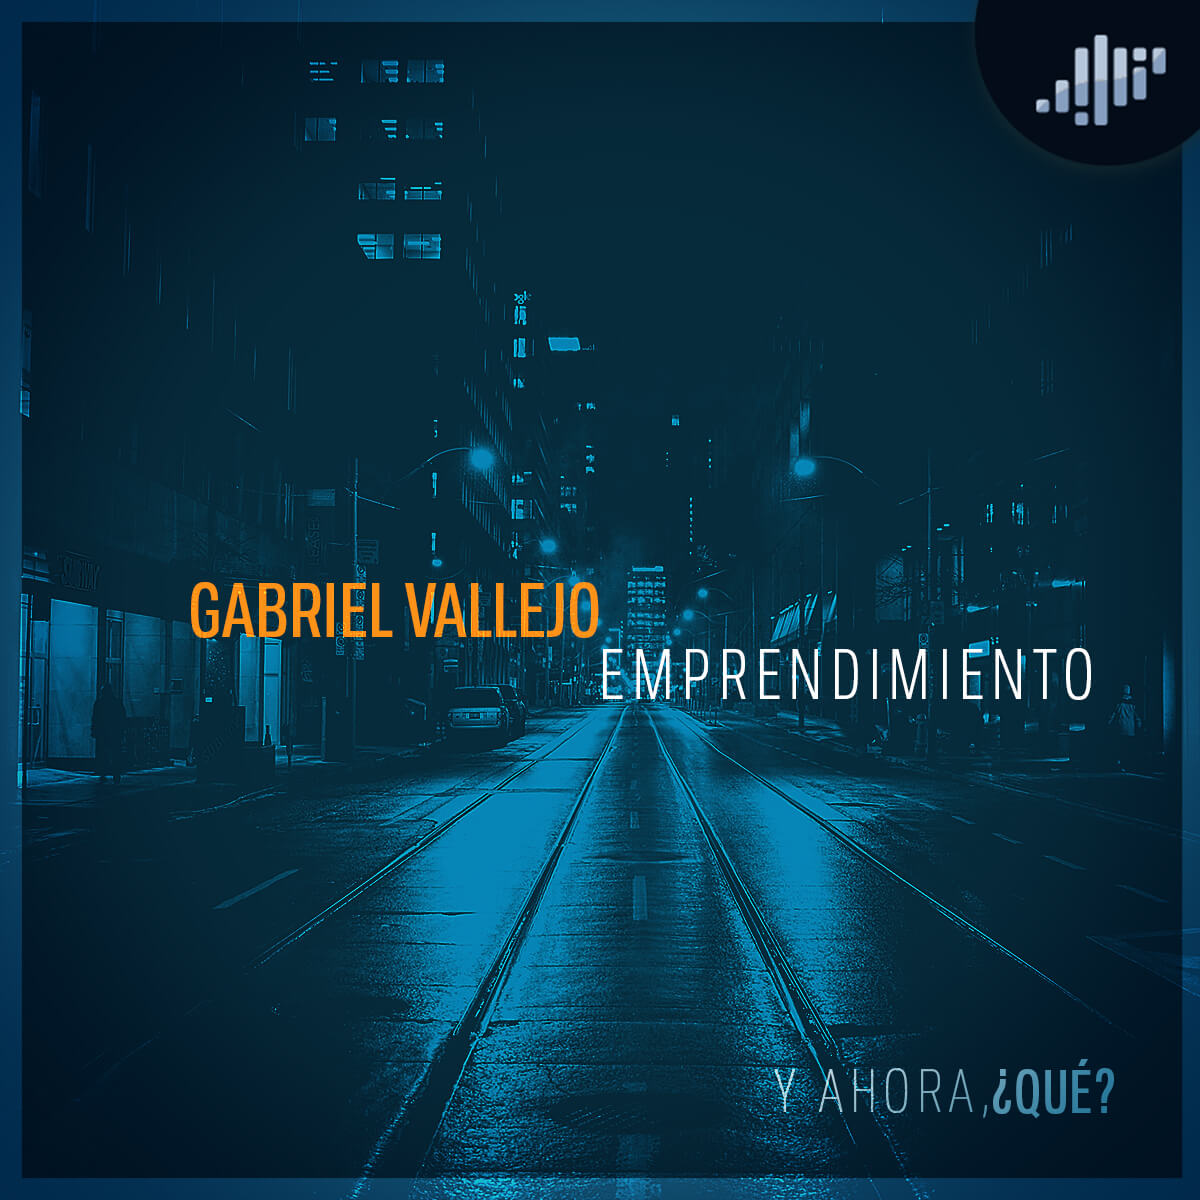 Servicio al cliente: Gabriel Vallejo | ¿Y ahora qué?